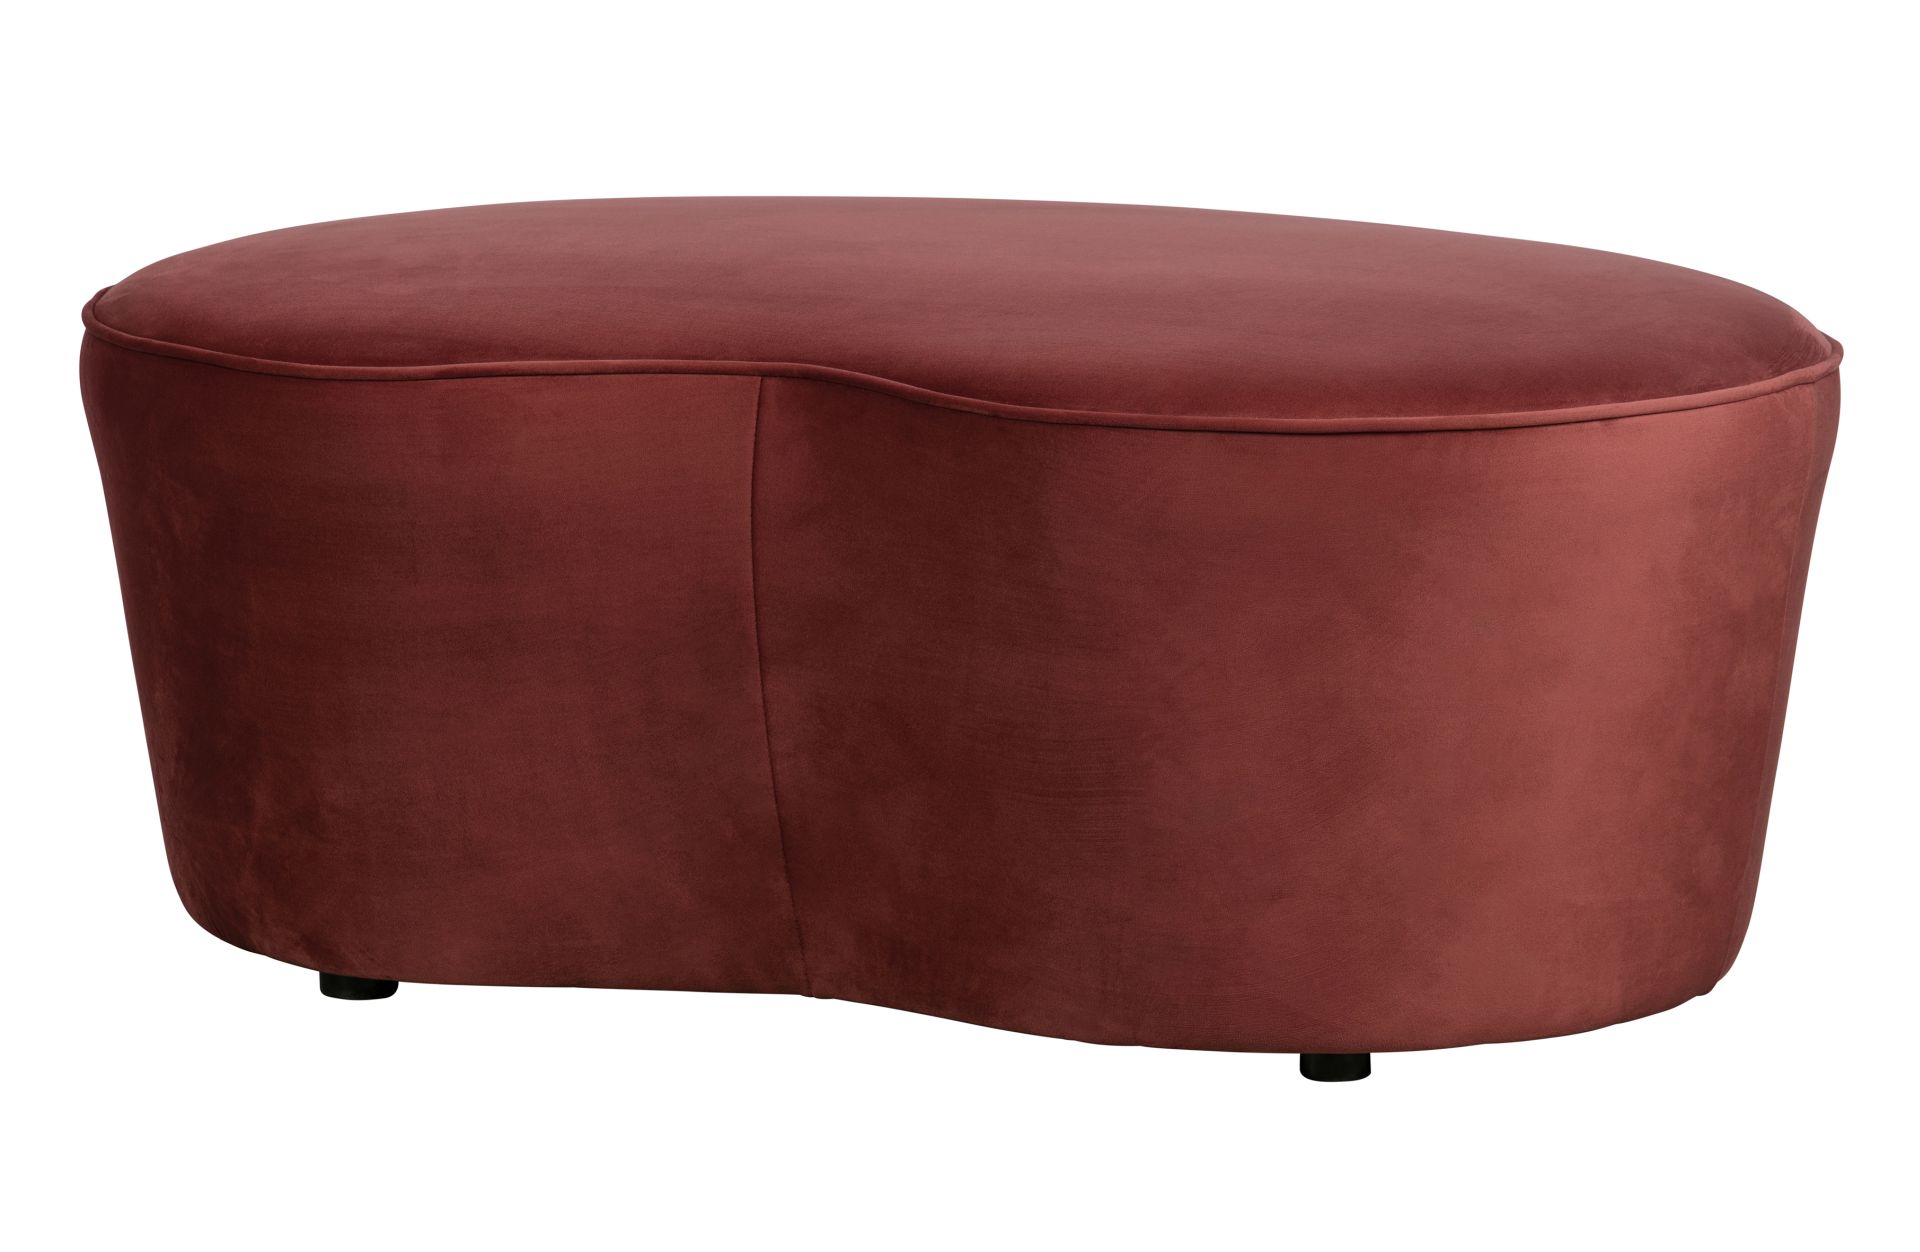 Das kleine Sofa Macaroni wurde aus einem Samt Bezug gefertigt, welcher einen roten Farbton besitzt. Das Sofa hat eine Breite von 110 cm.